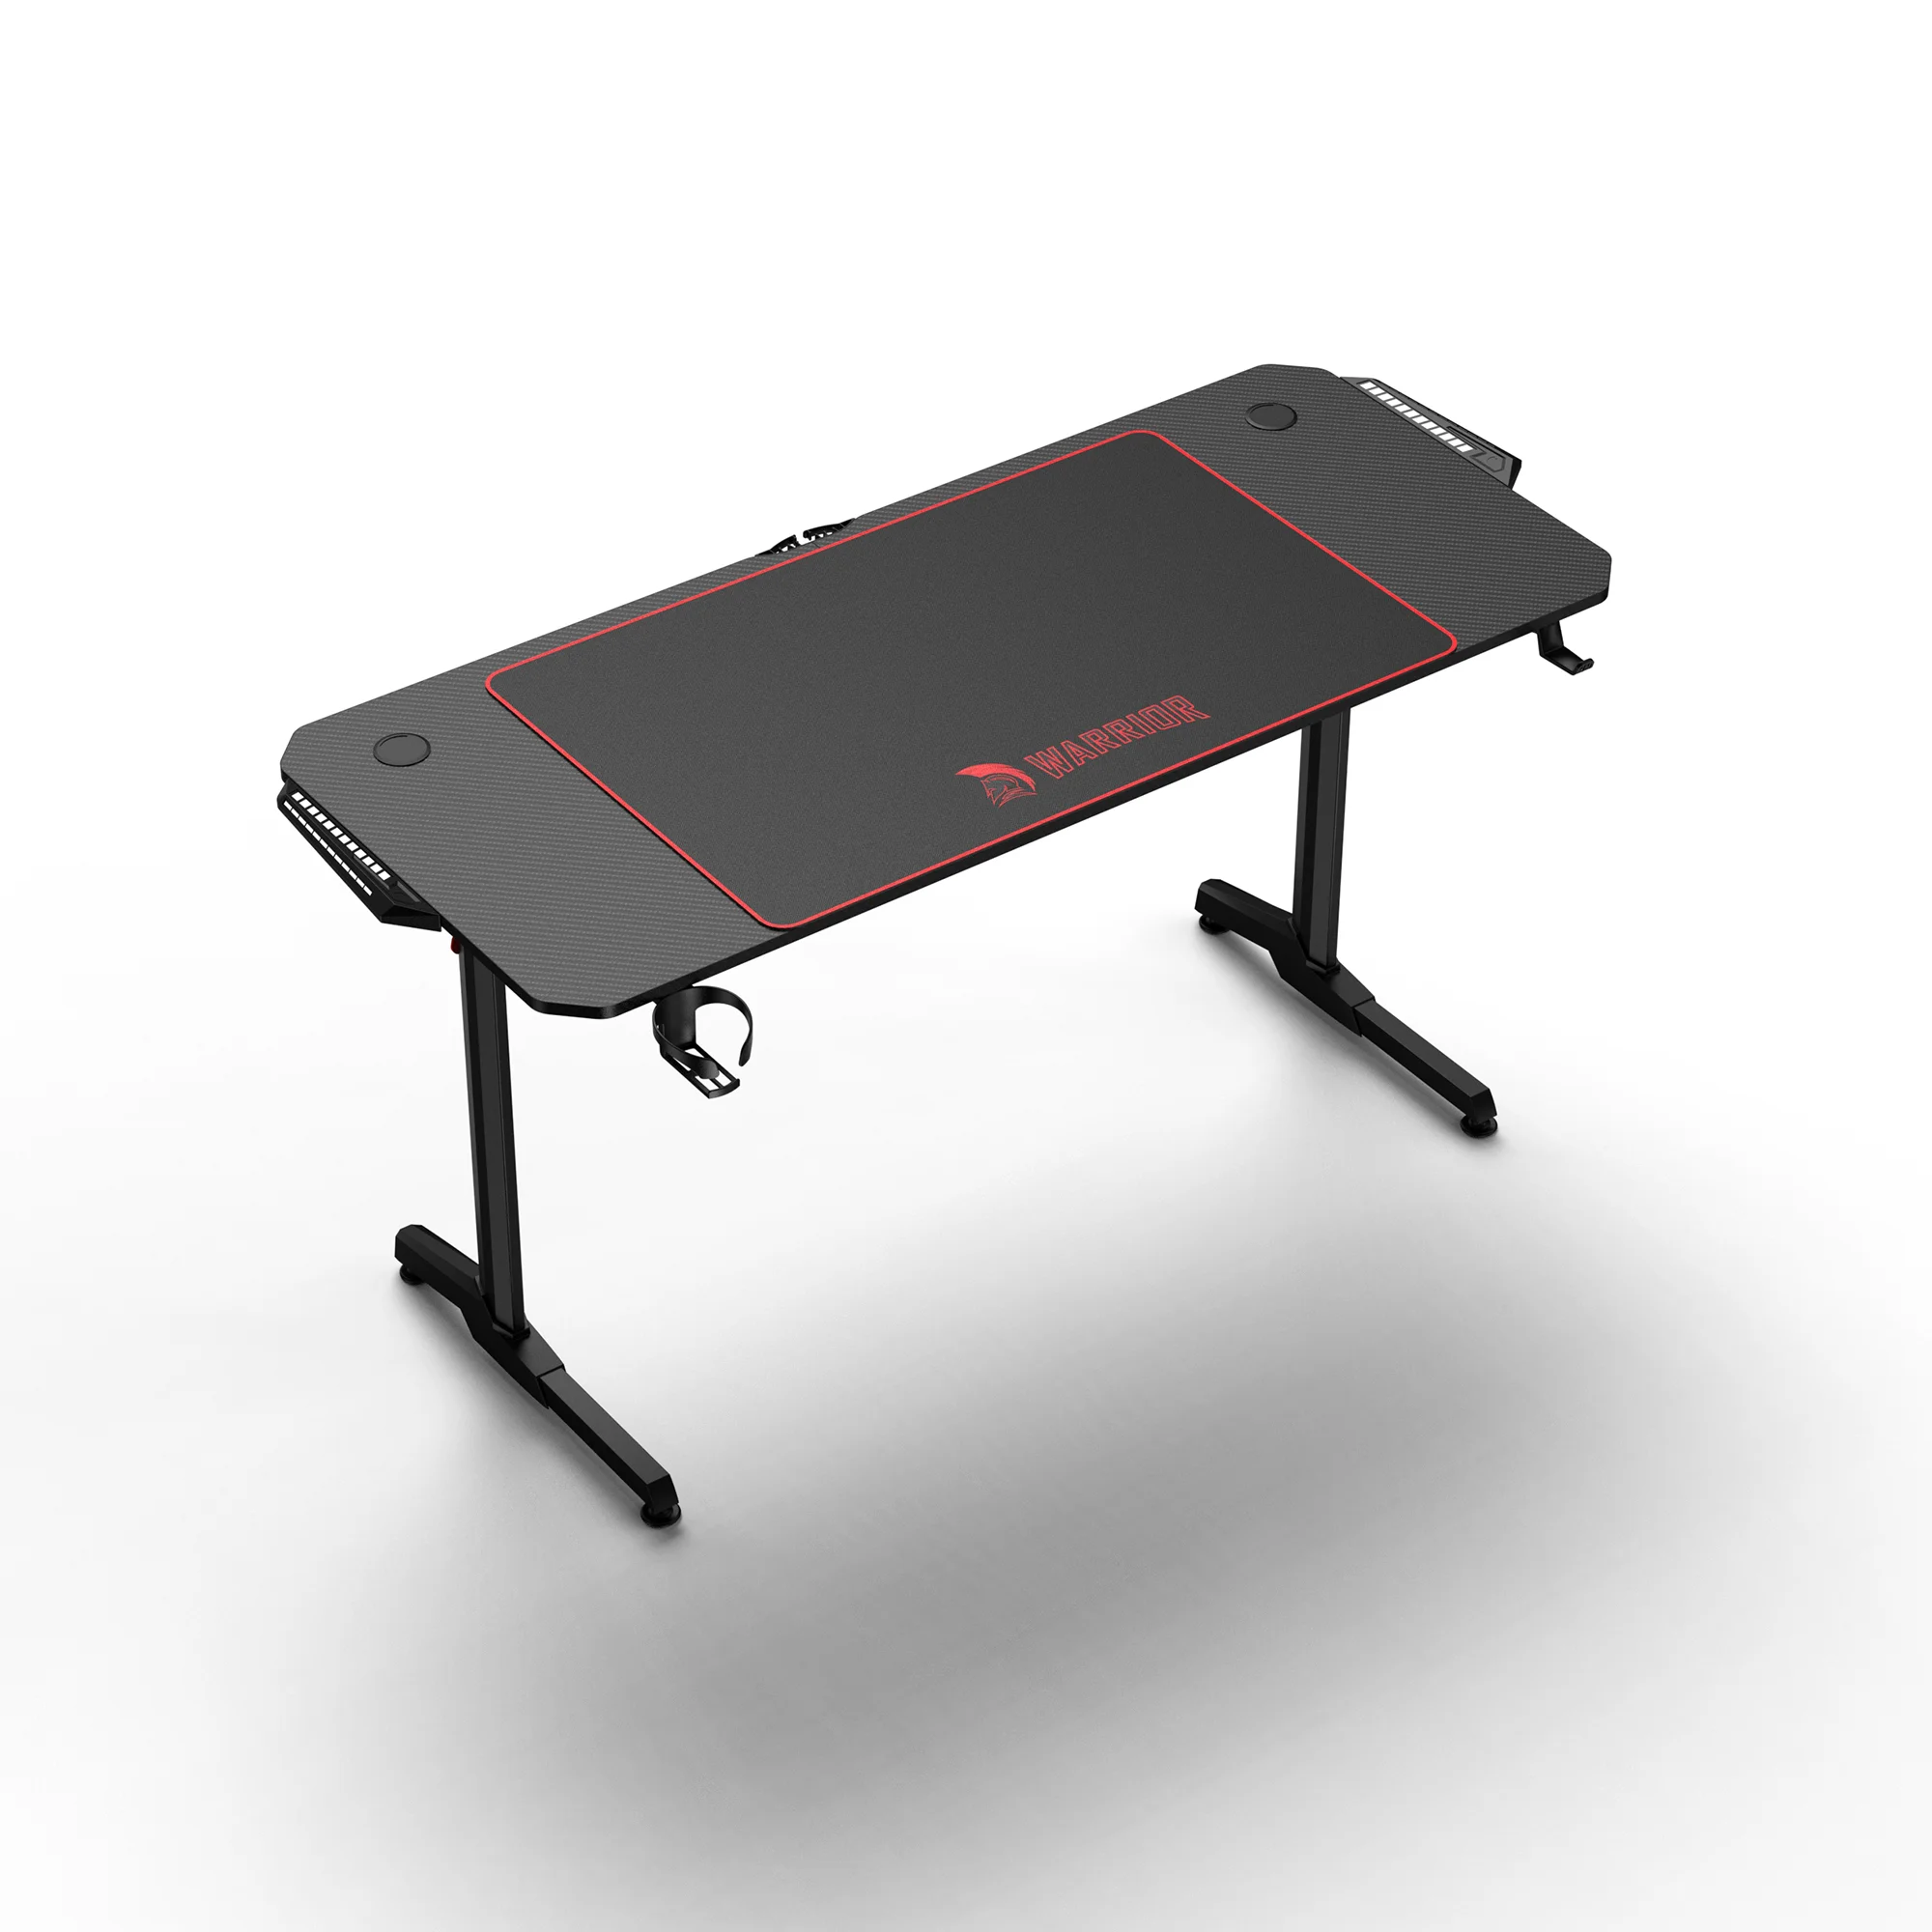 WARRIOR gamer asztal alumínium, fekete színben, egérpaddal, RGB világítással 140x60x75cm (TD-01)